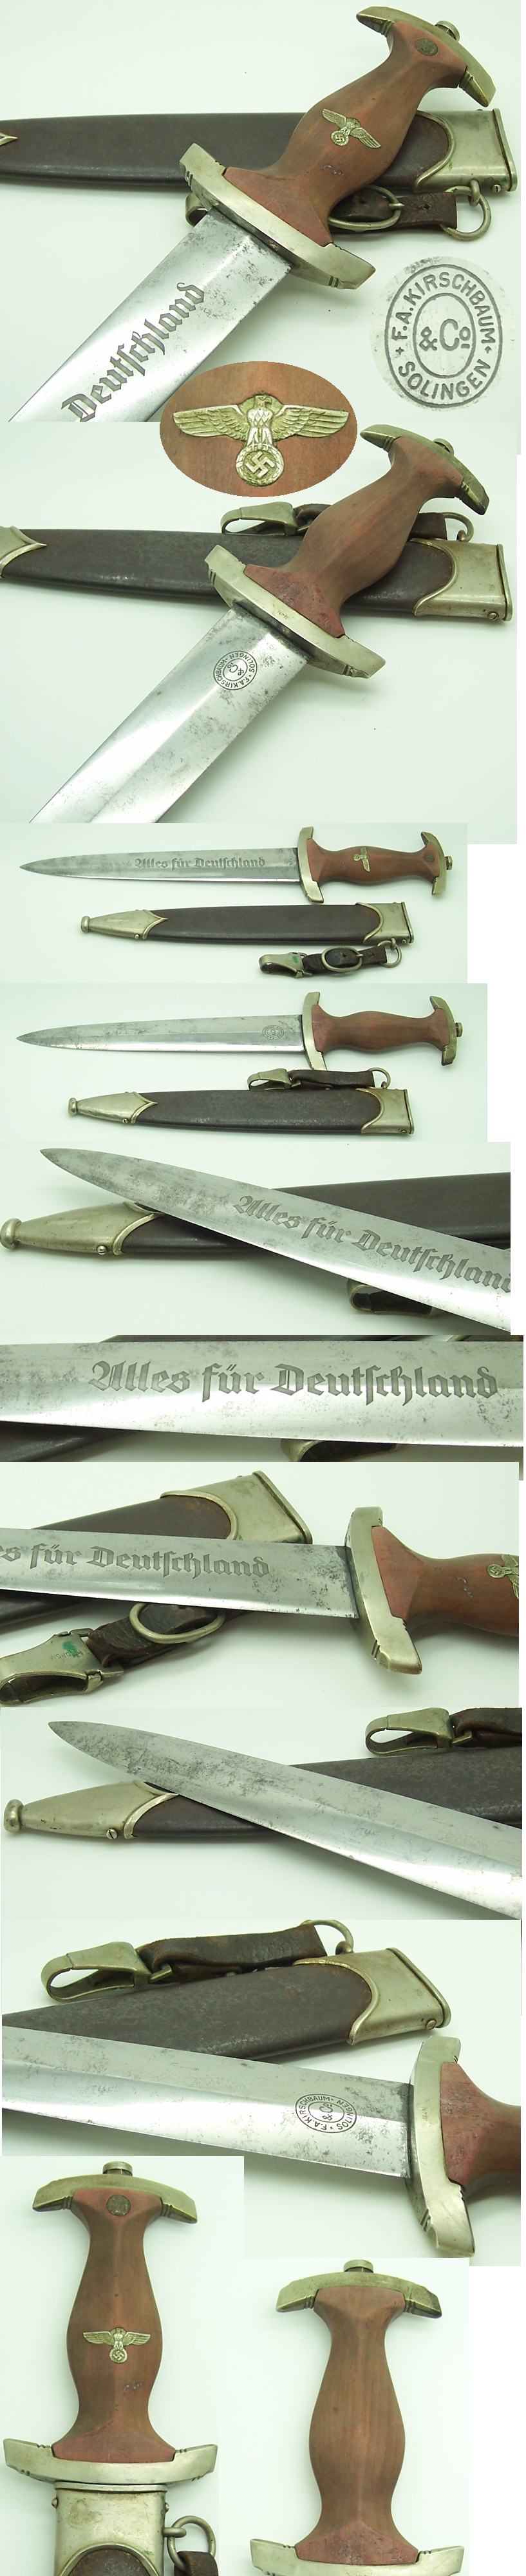 Early F.A. Kirschbaum SA Dagger